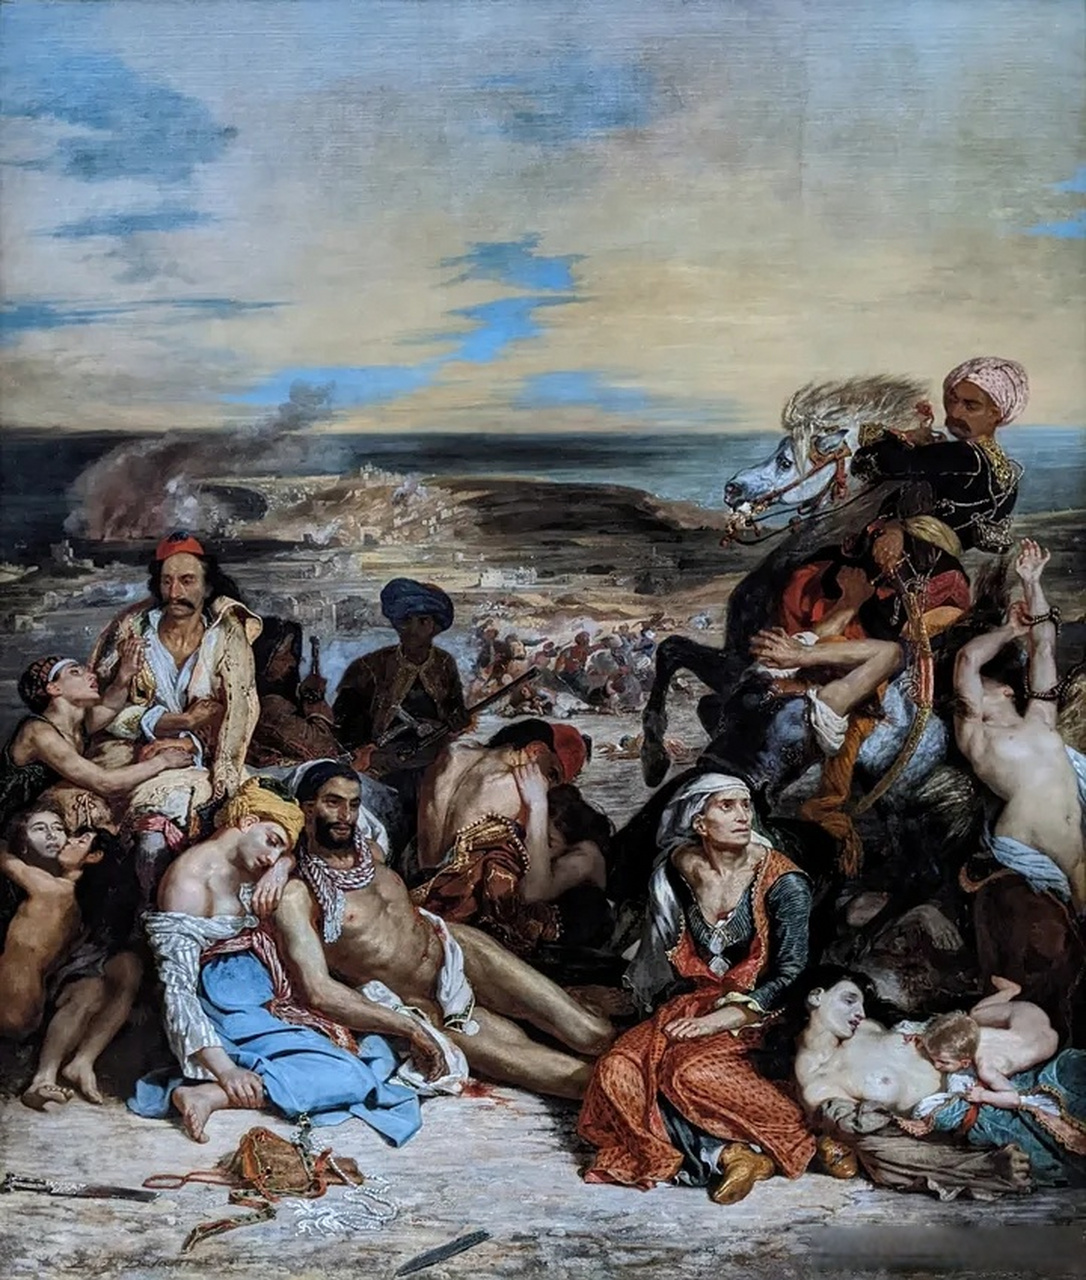 古希腊油画战争图片